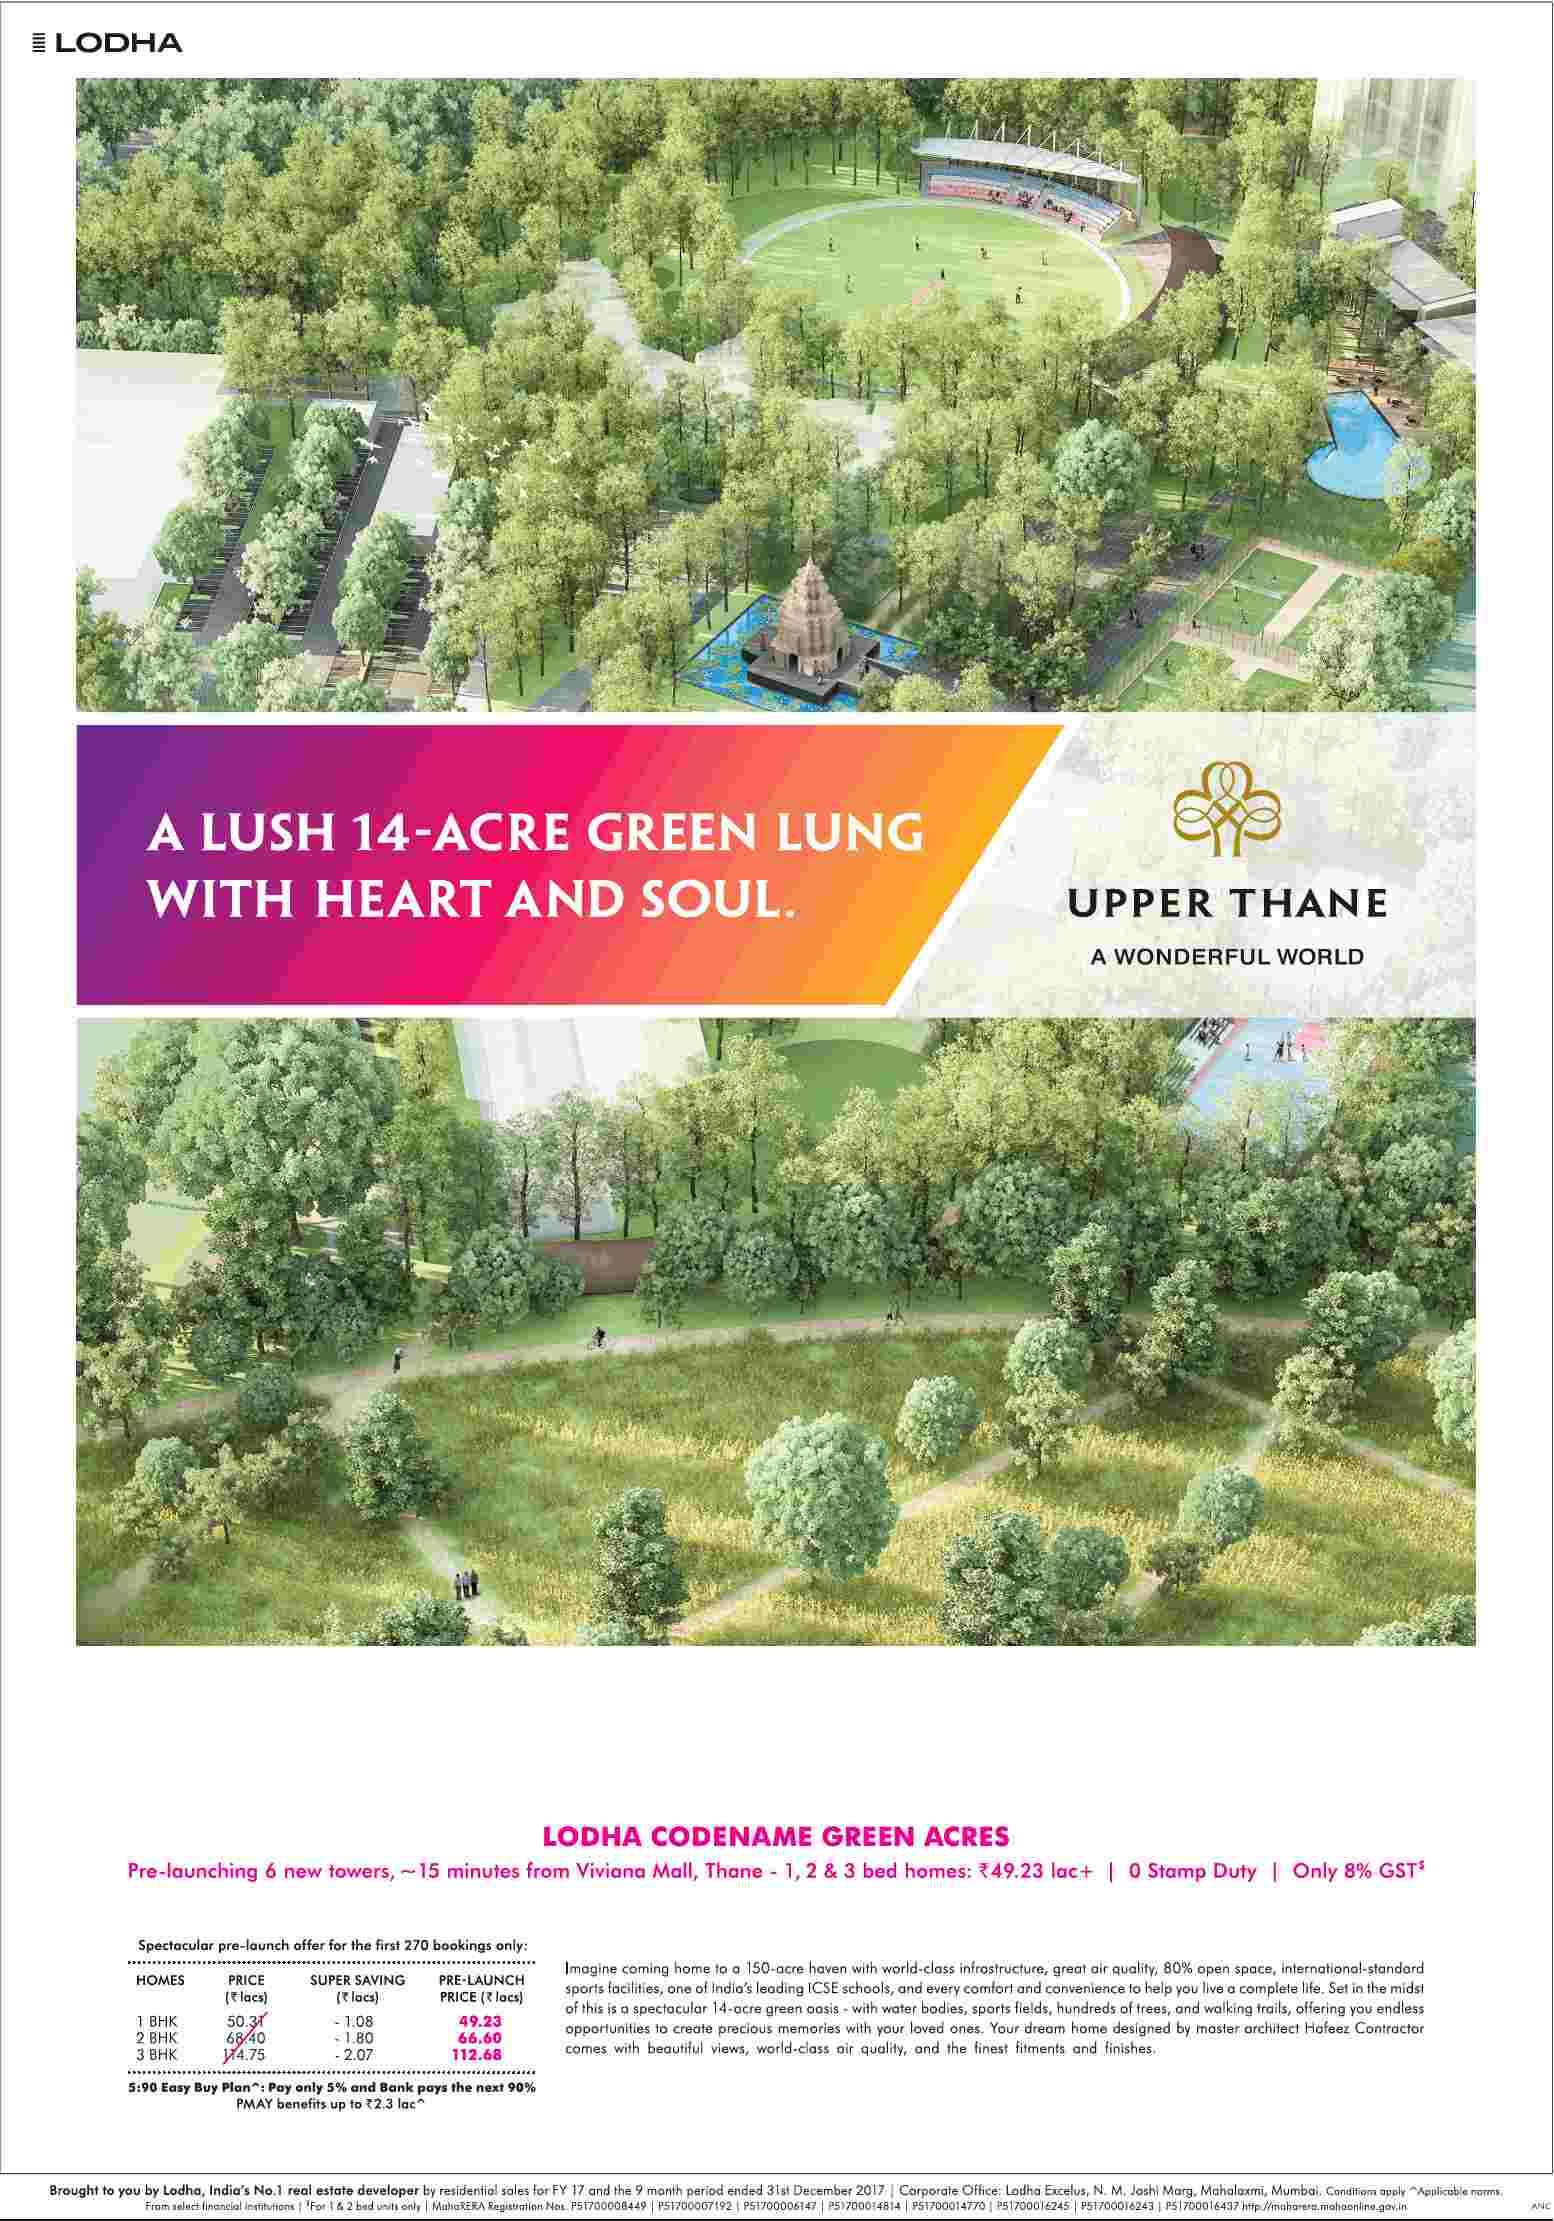 Lodha launching Codename Green Acres in Mumbai Update